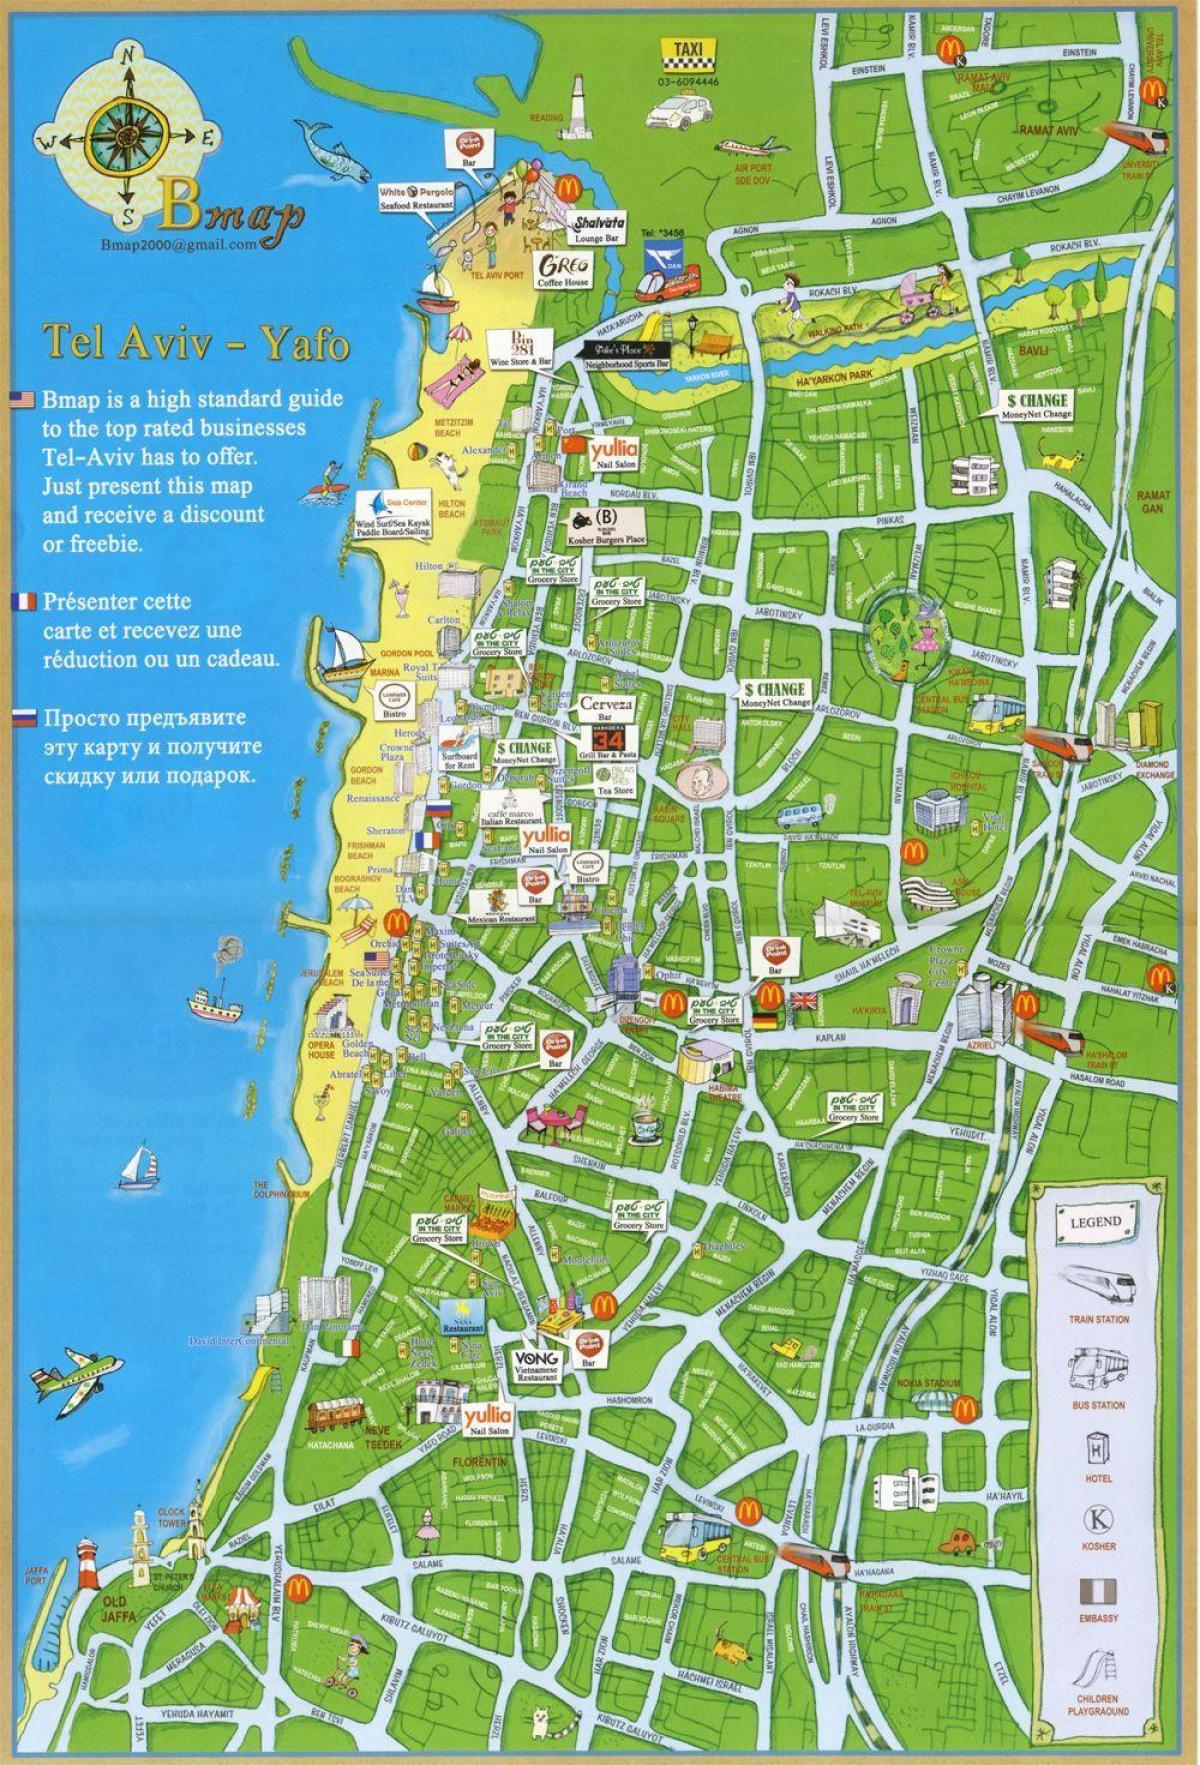 Tel Aviv peta wisata